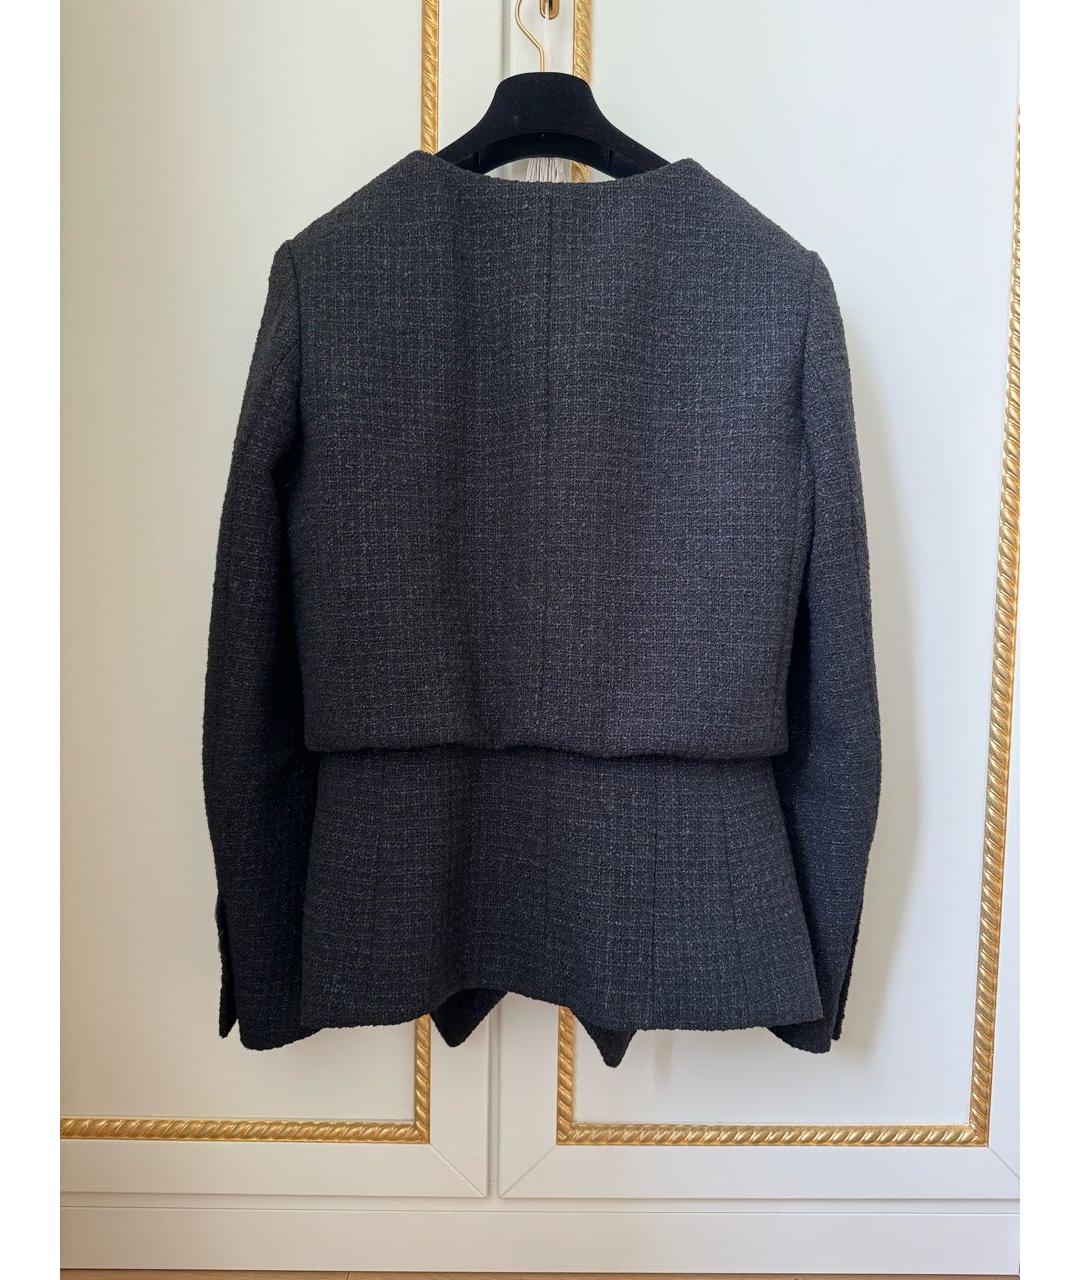 CHANEL PRE-OWNED Черный шерстяной жакет/пиджак, фото 3